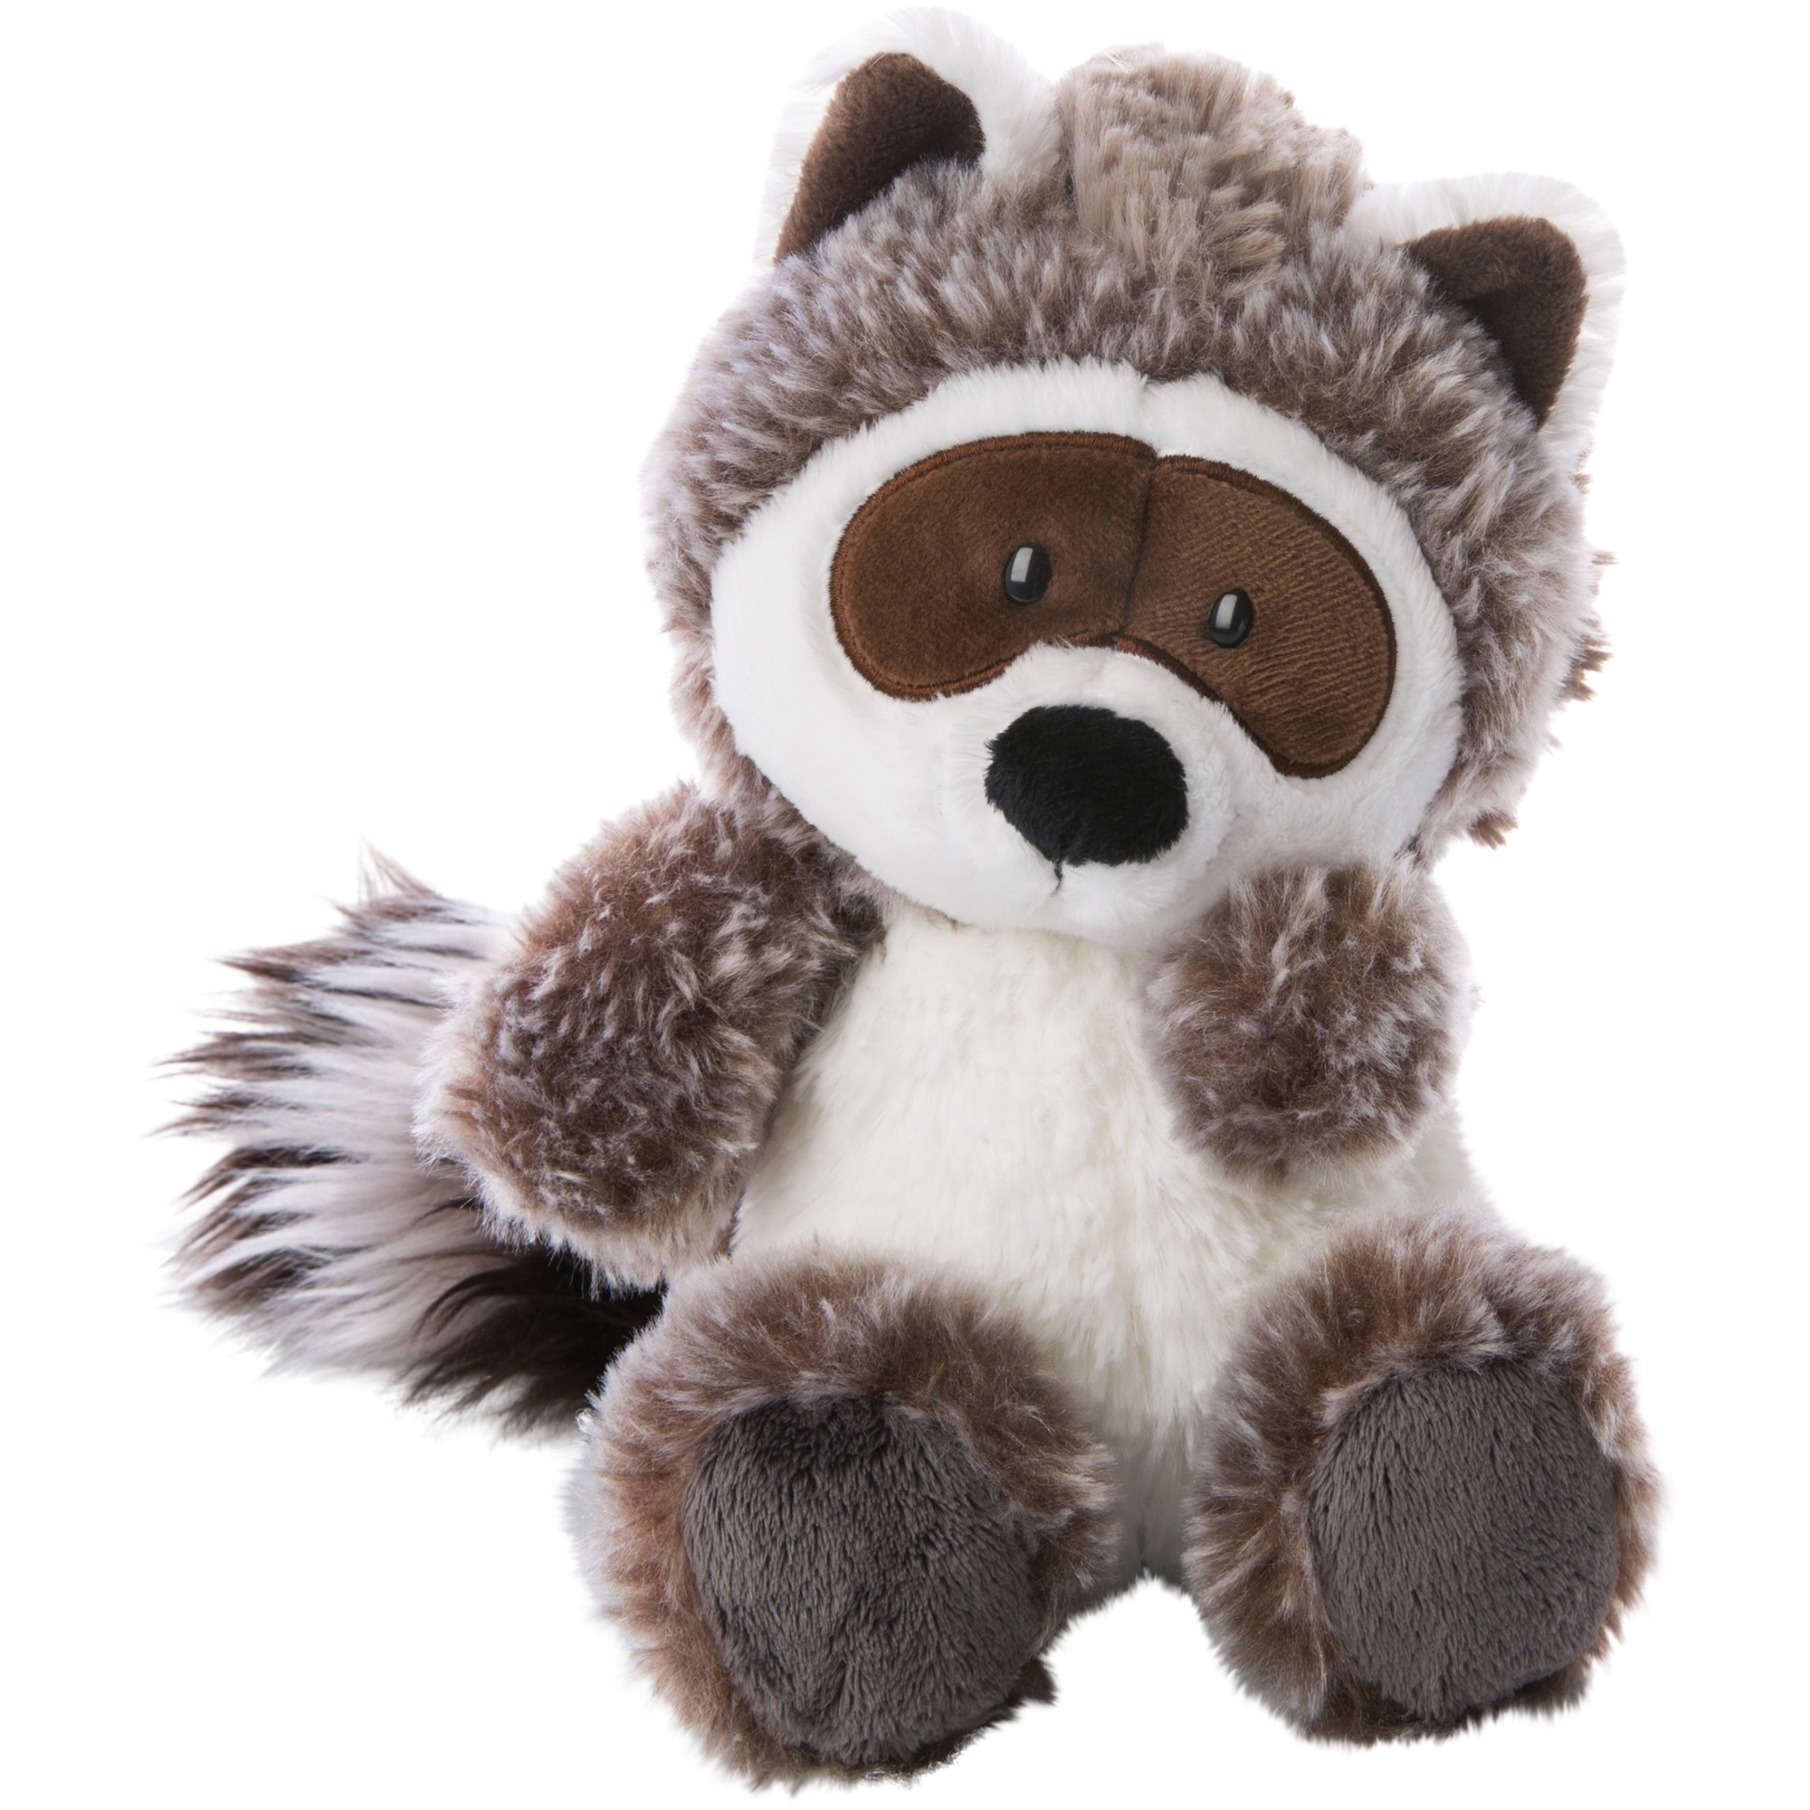 Image of Alternate - Waschbär Rauly Raccoon, Kuscheltier online einkaufen bei Alternate